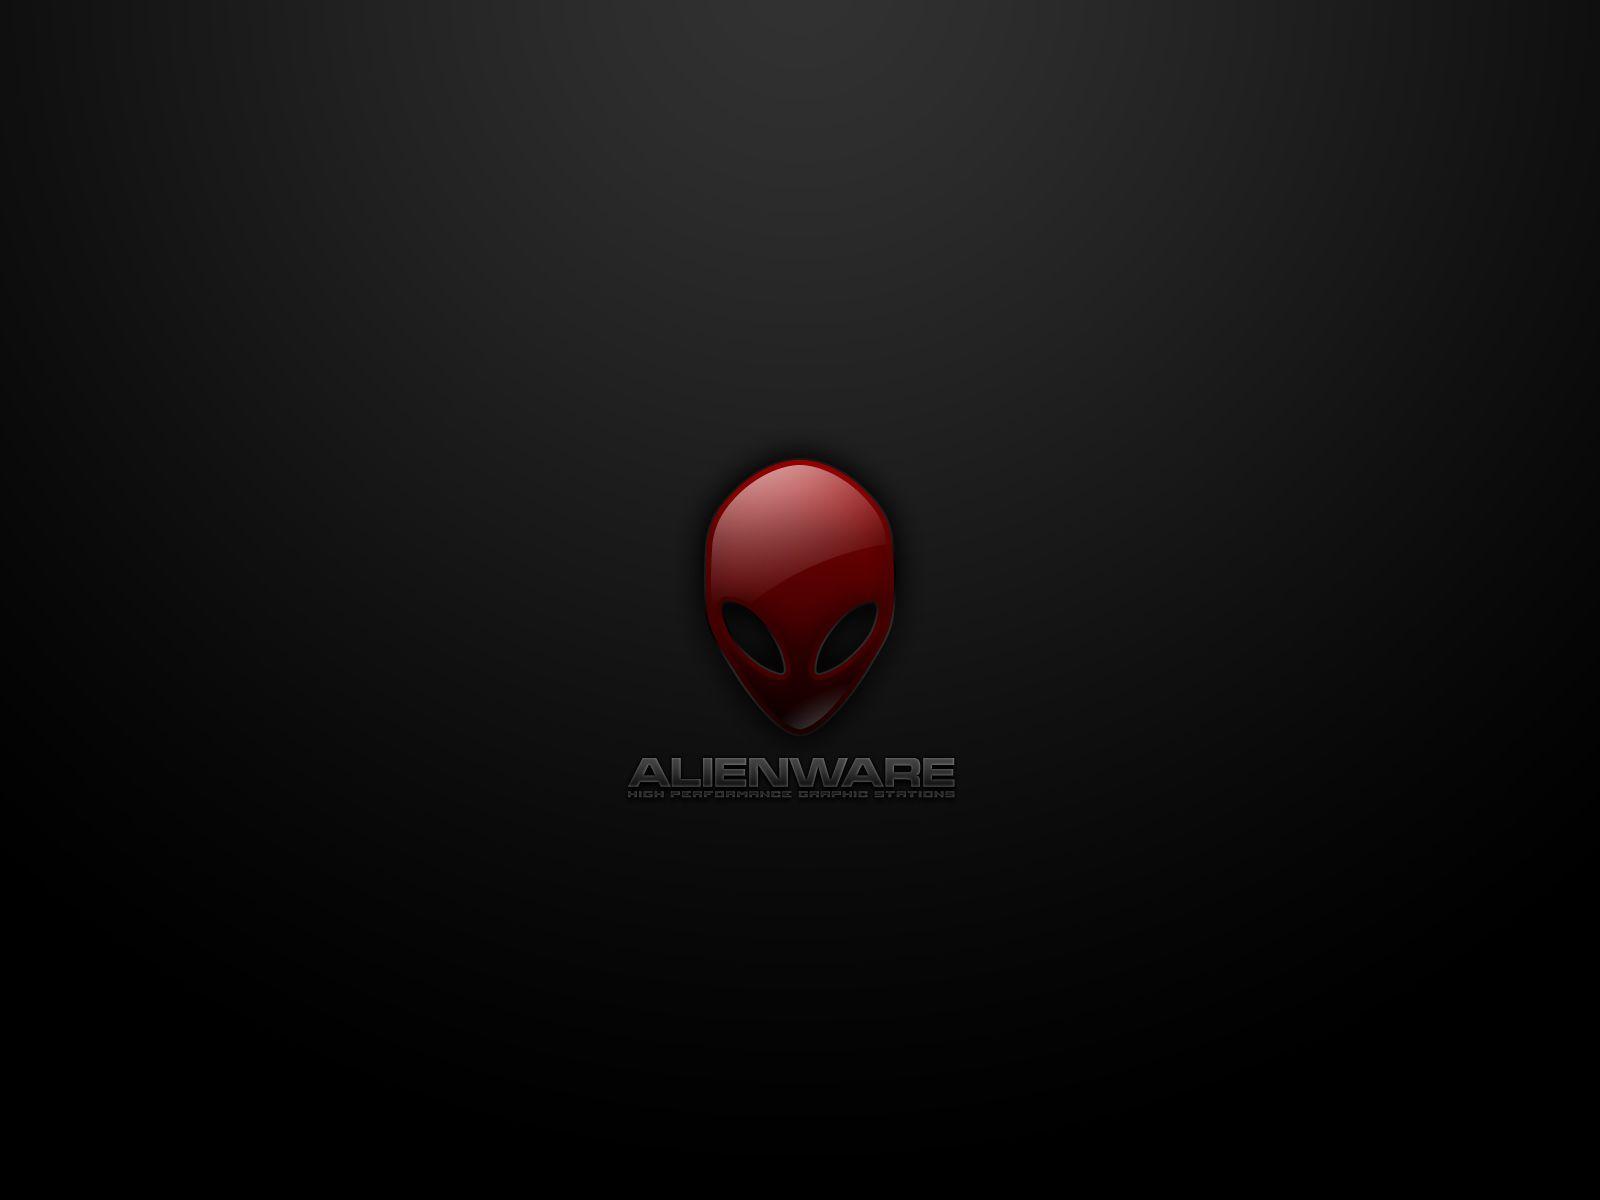 Alienware Desktop HD Wallpaper 16 - My Wallz free